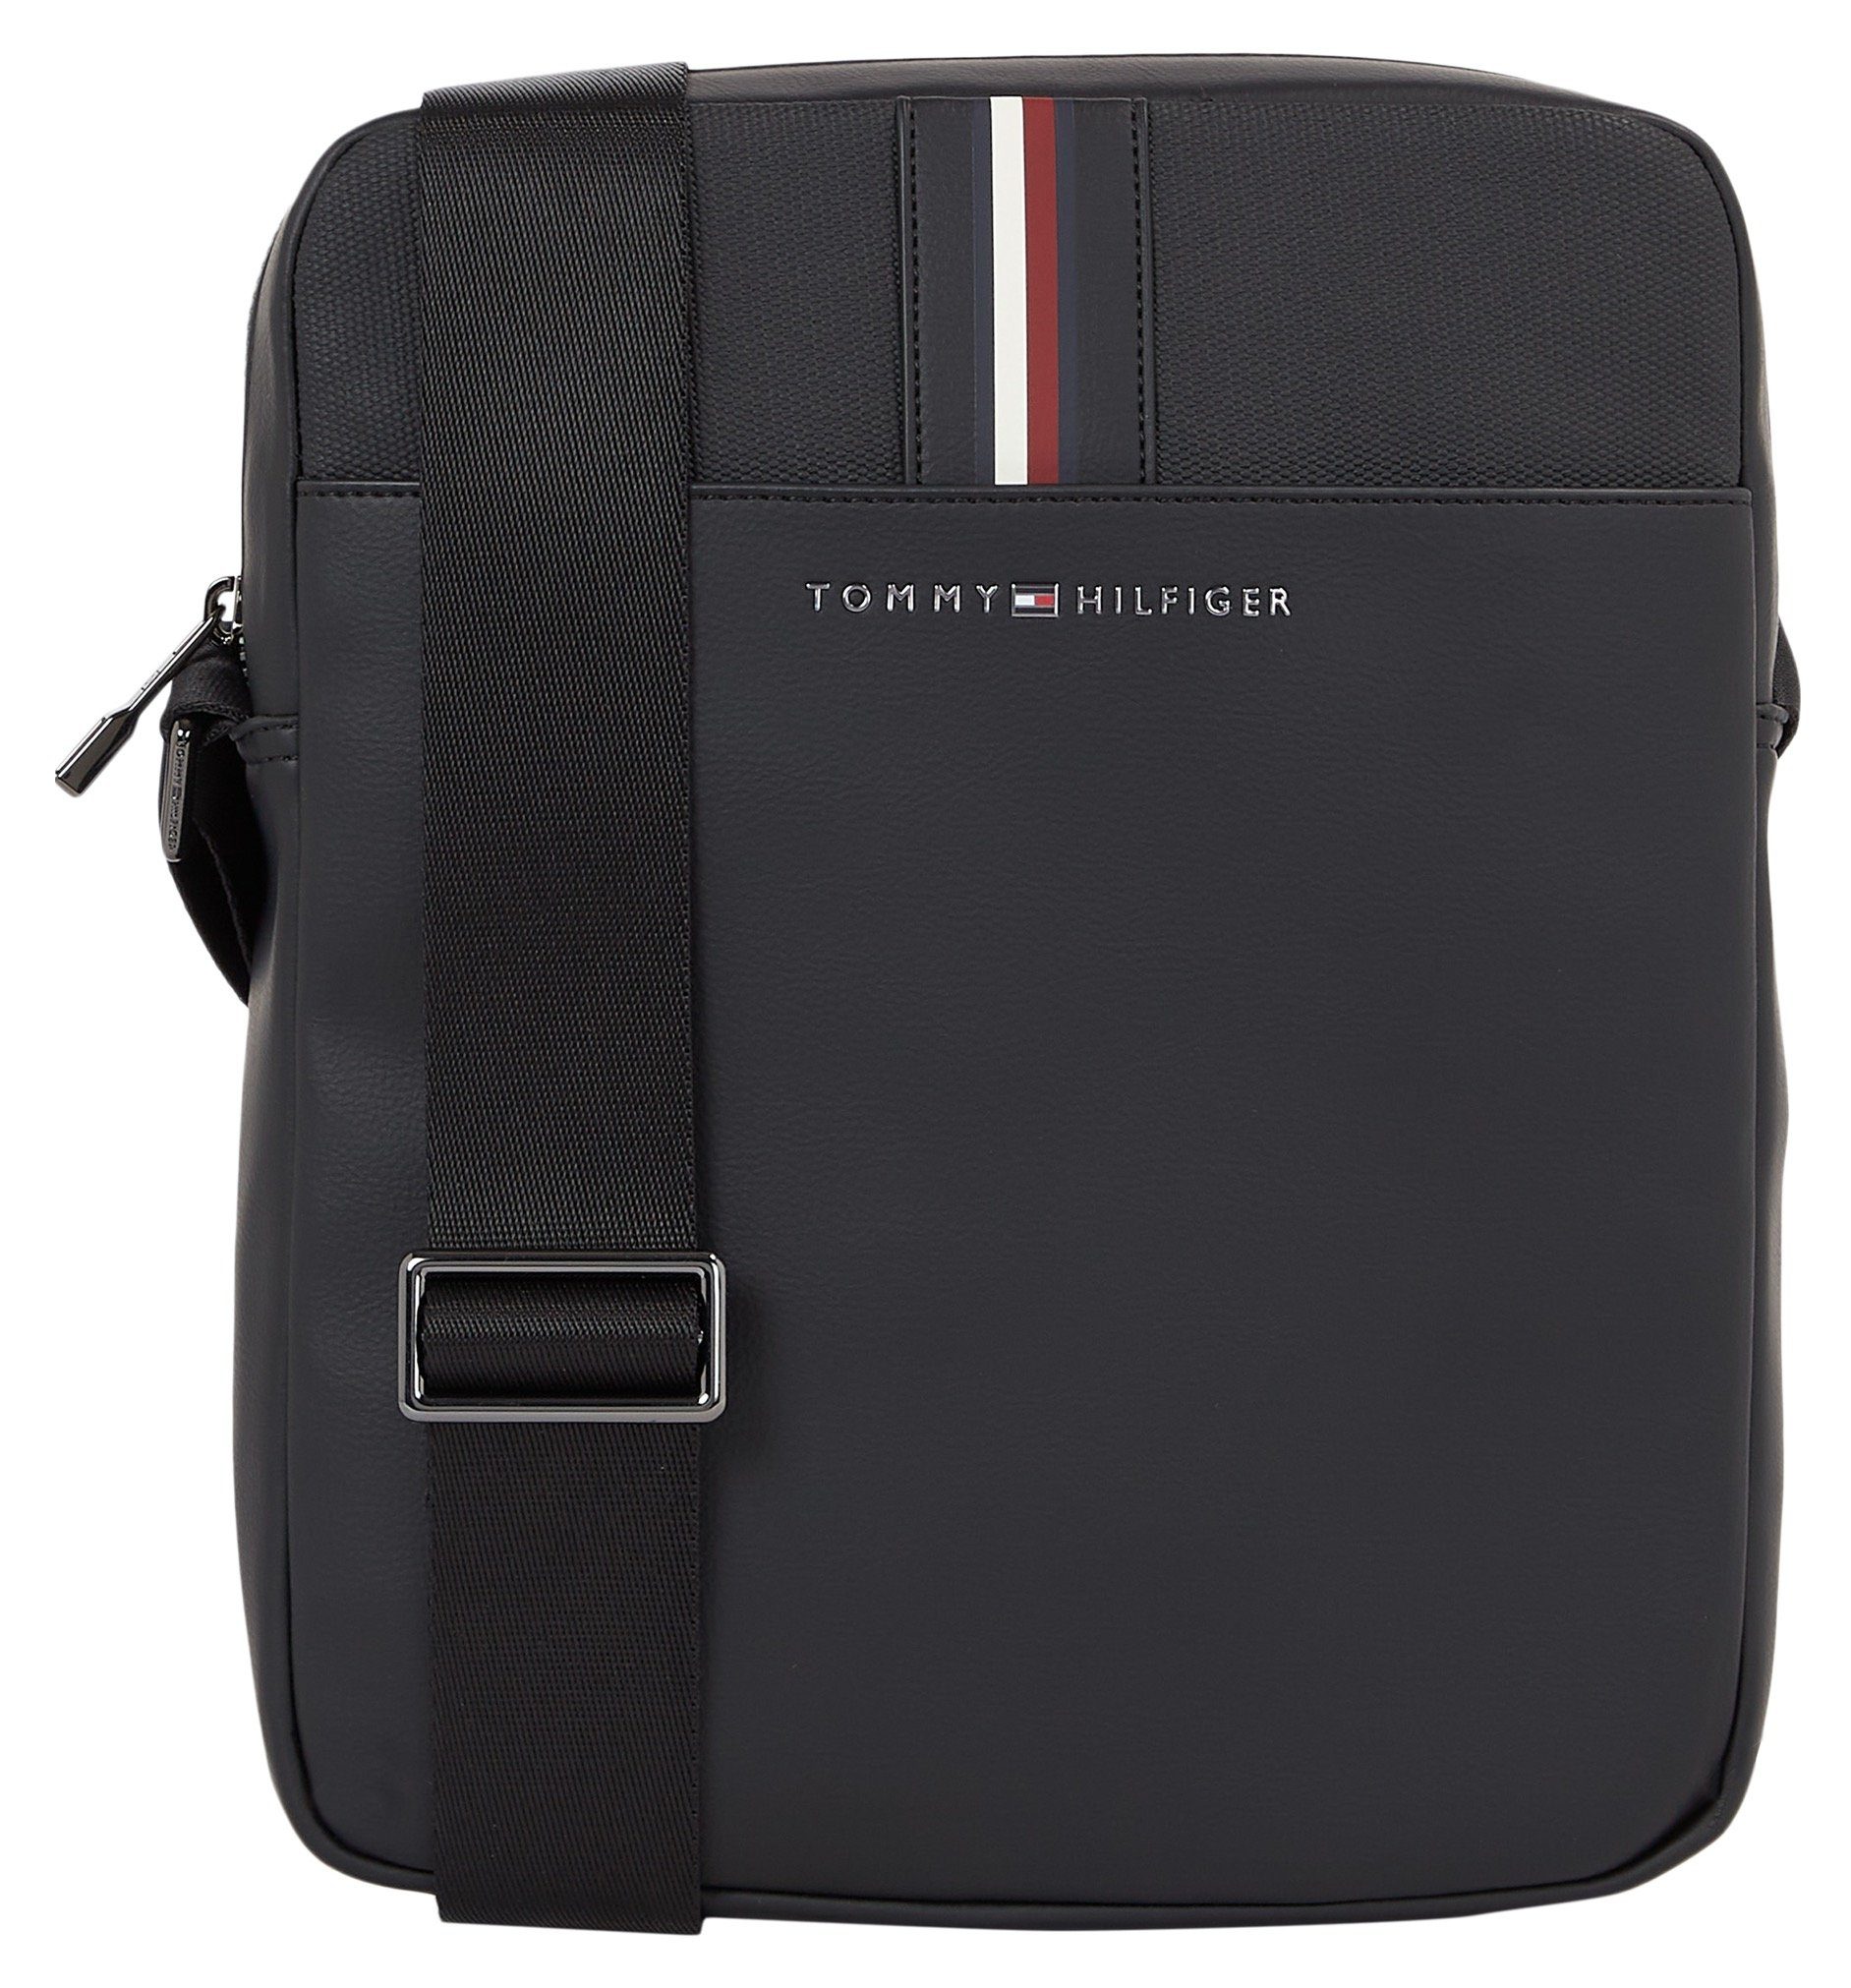 Bag REPORTER, praktischen im Mini CORPORATE Hilfiger Tommy Design TH